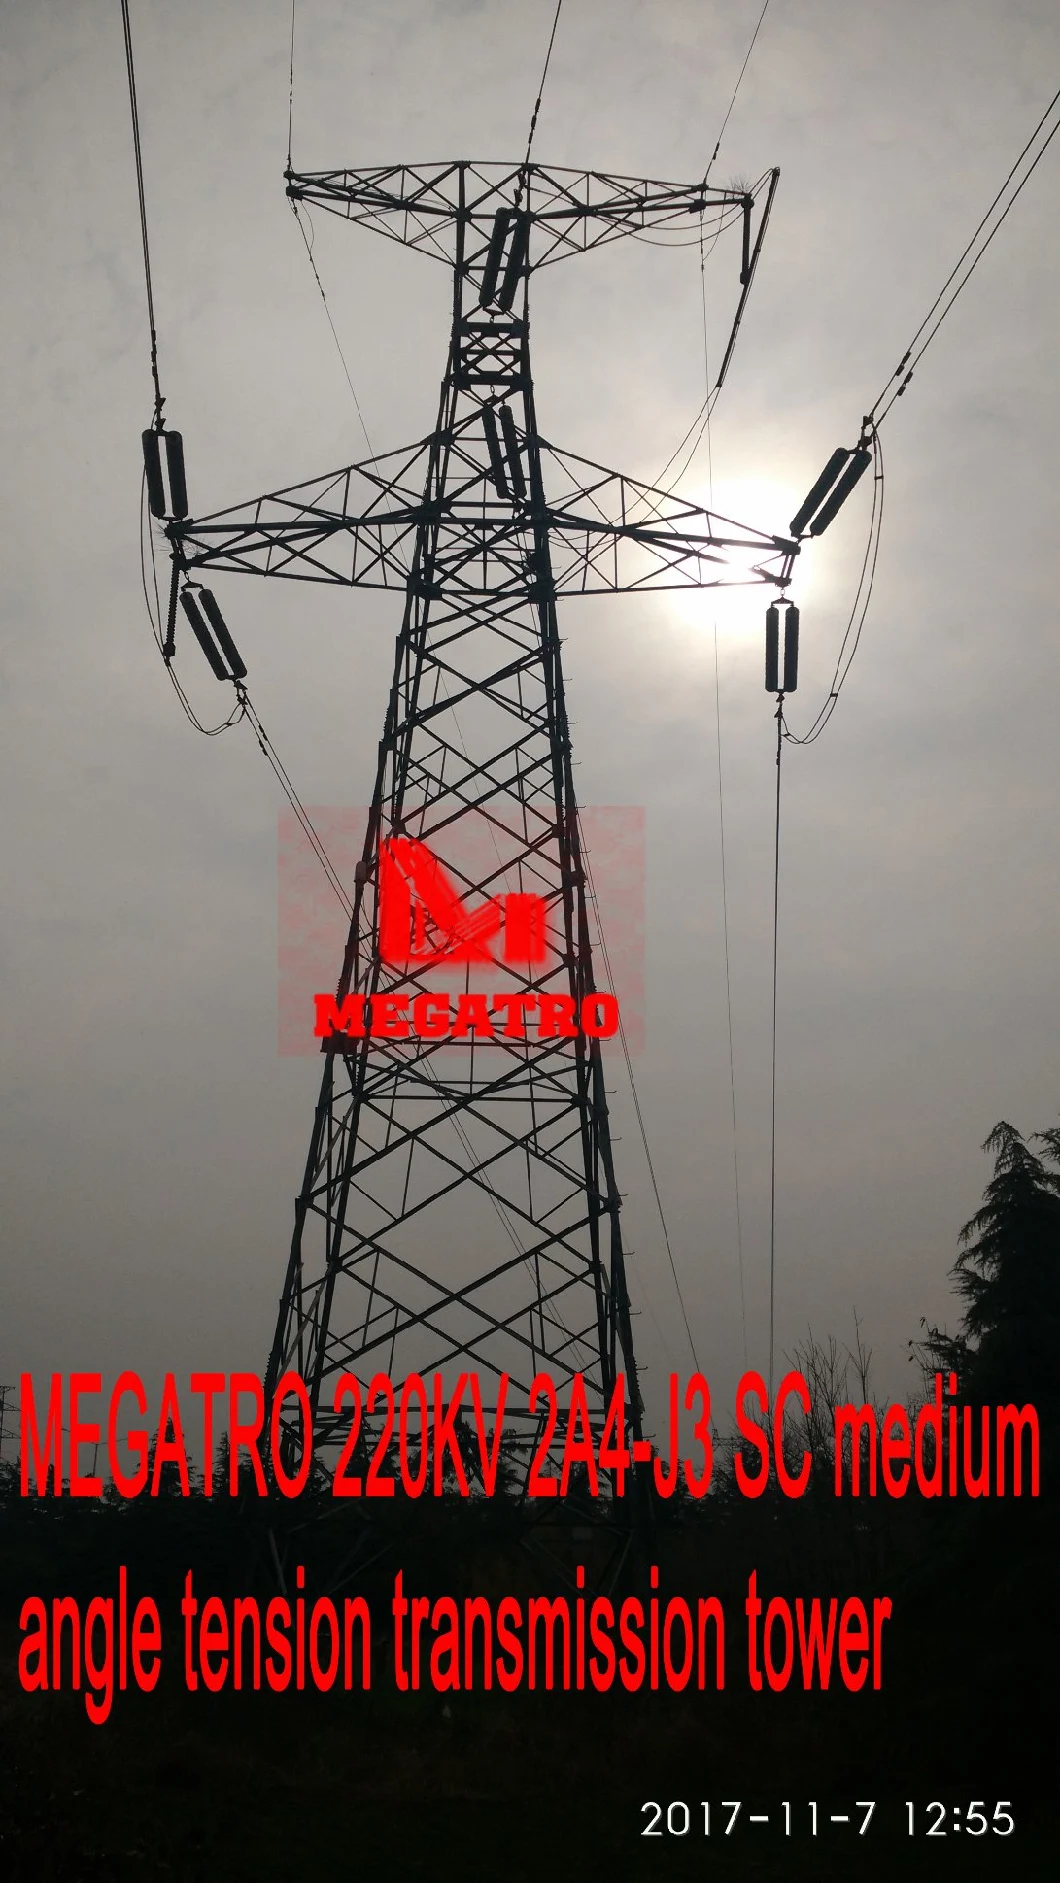 Megatro 220kv 2A4-J3 Sc Medium Angle Tension Transmission Tower